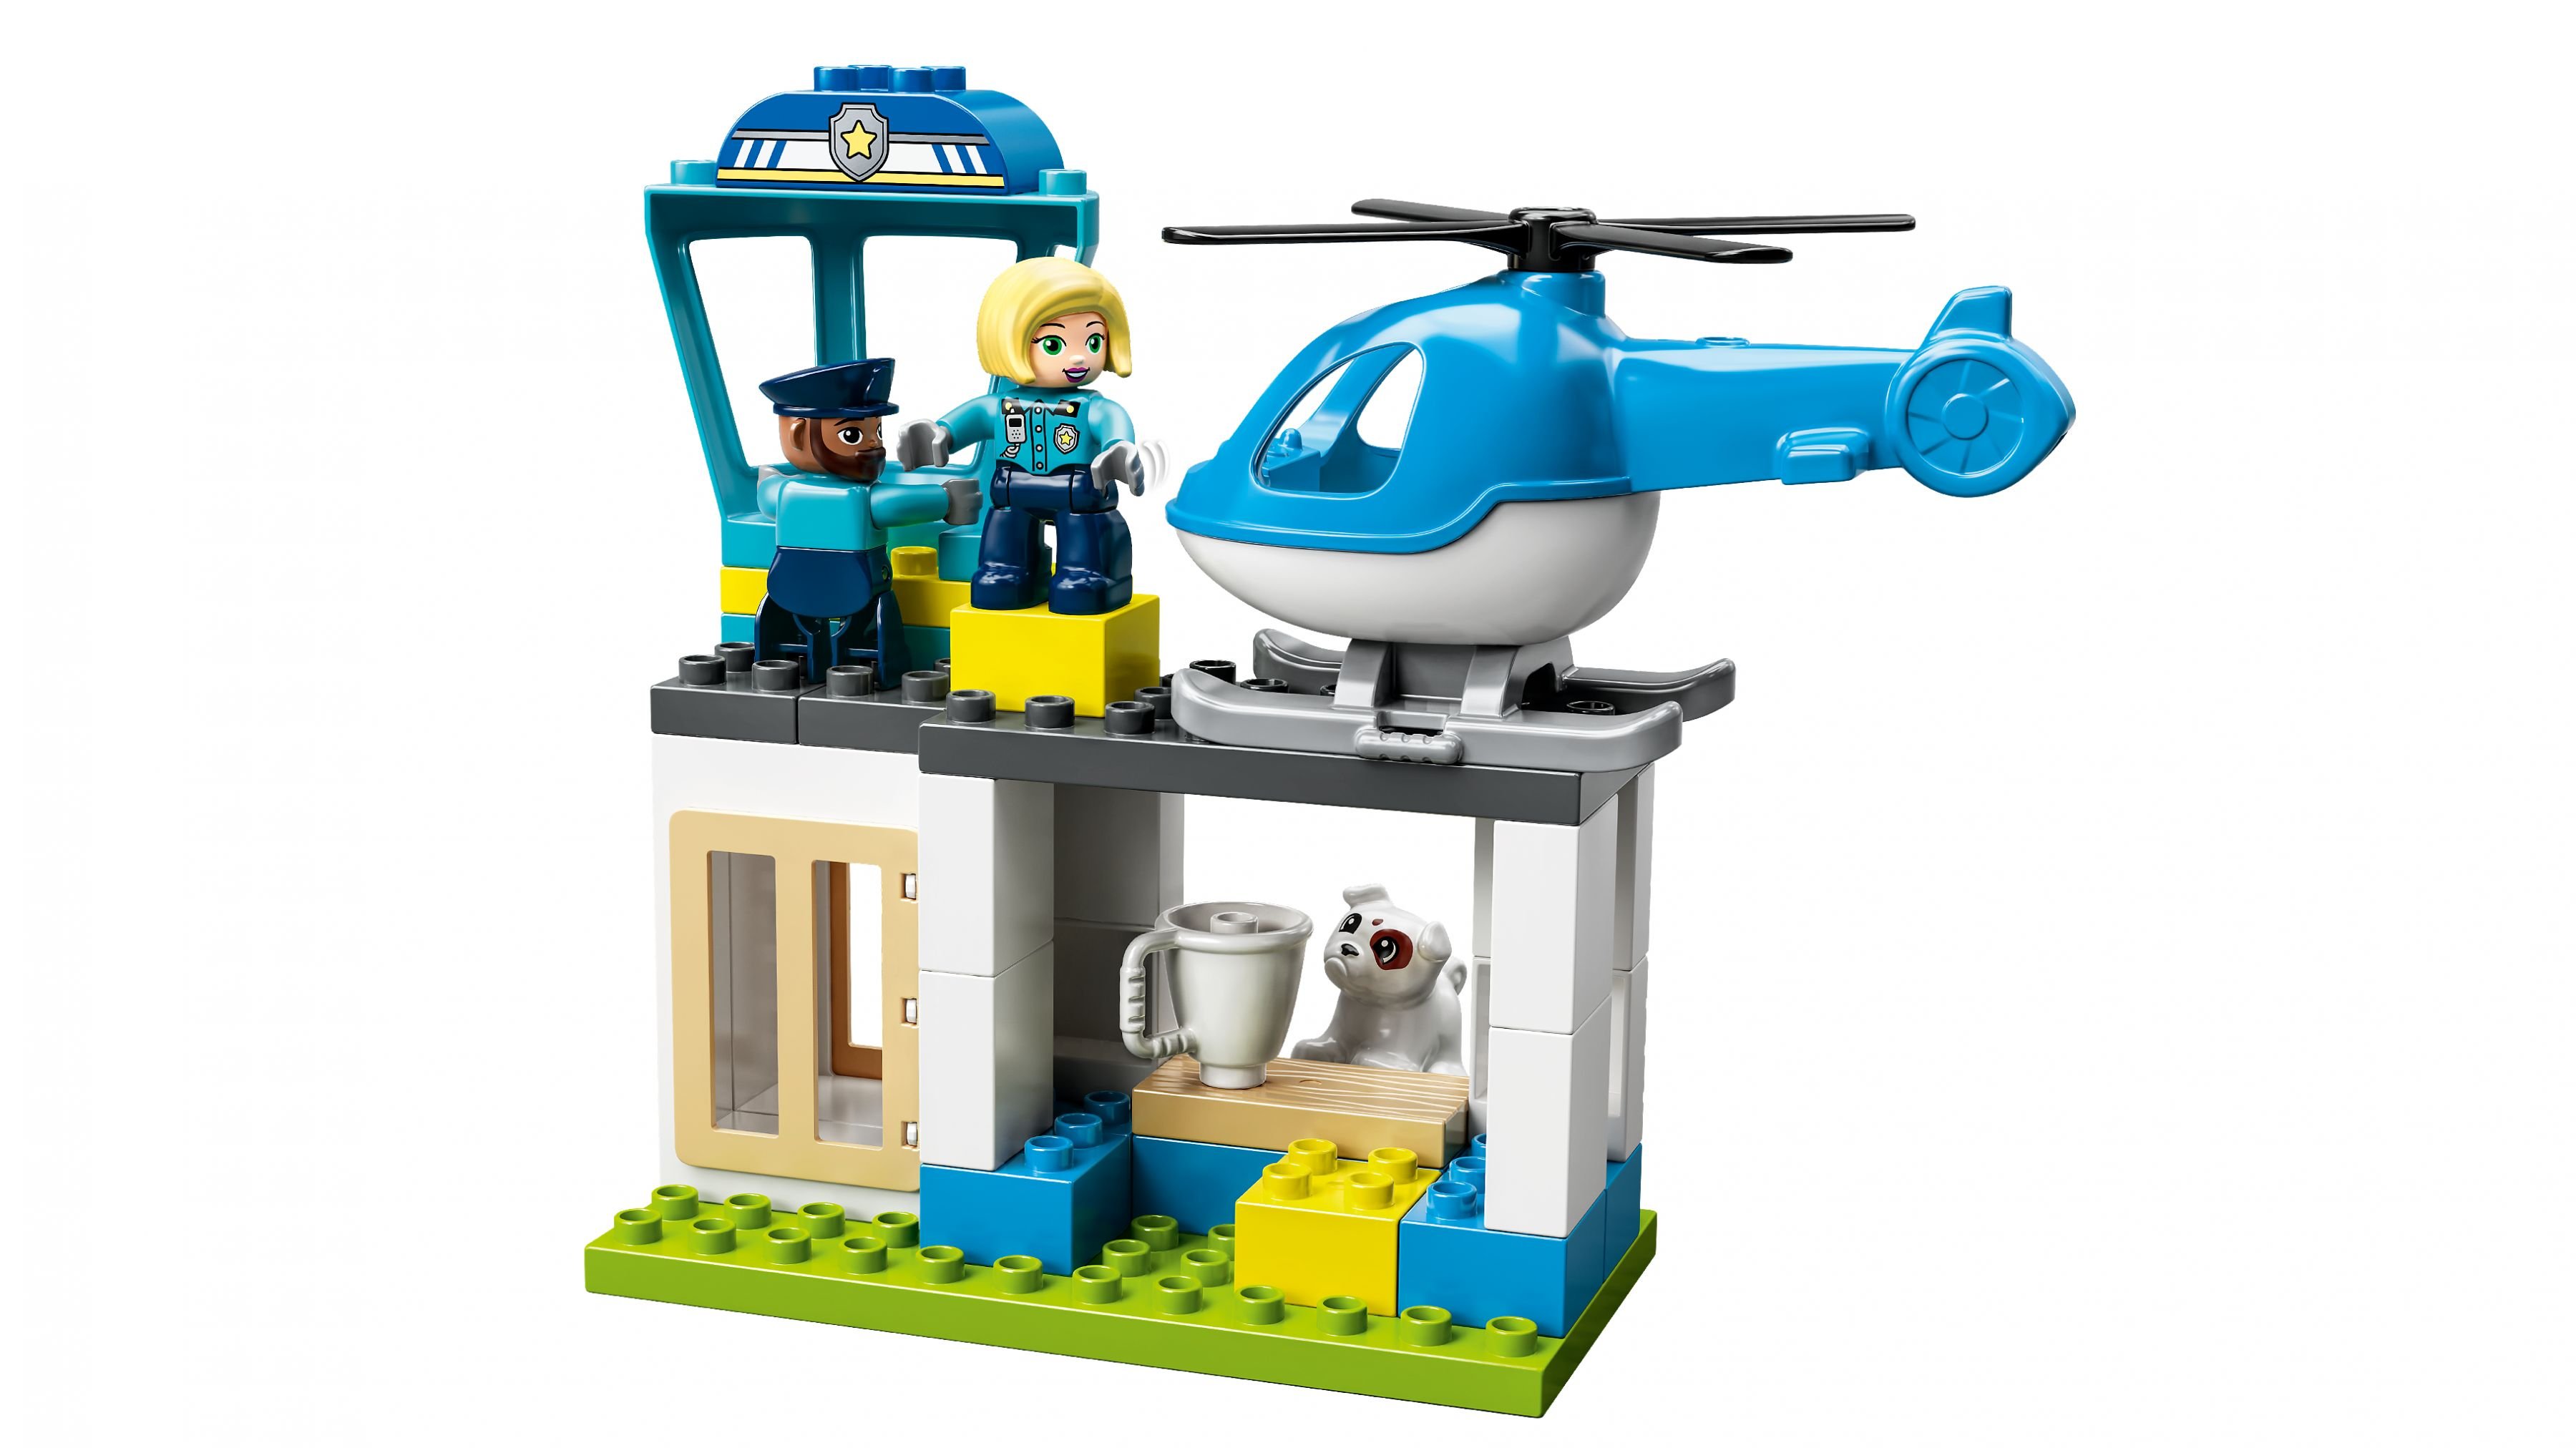 LEGO Duplo 10959 Polizeistation mit Hubschrauber LEGO_10959_WEB_SEC02_NOBG.jpg